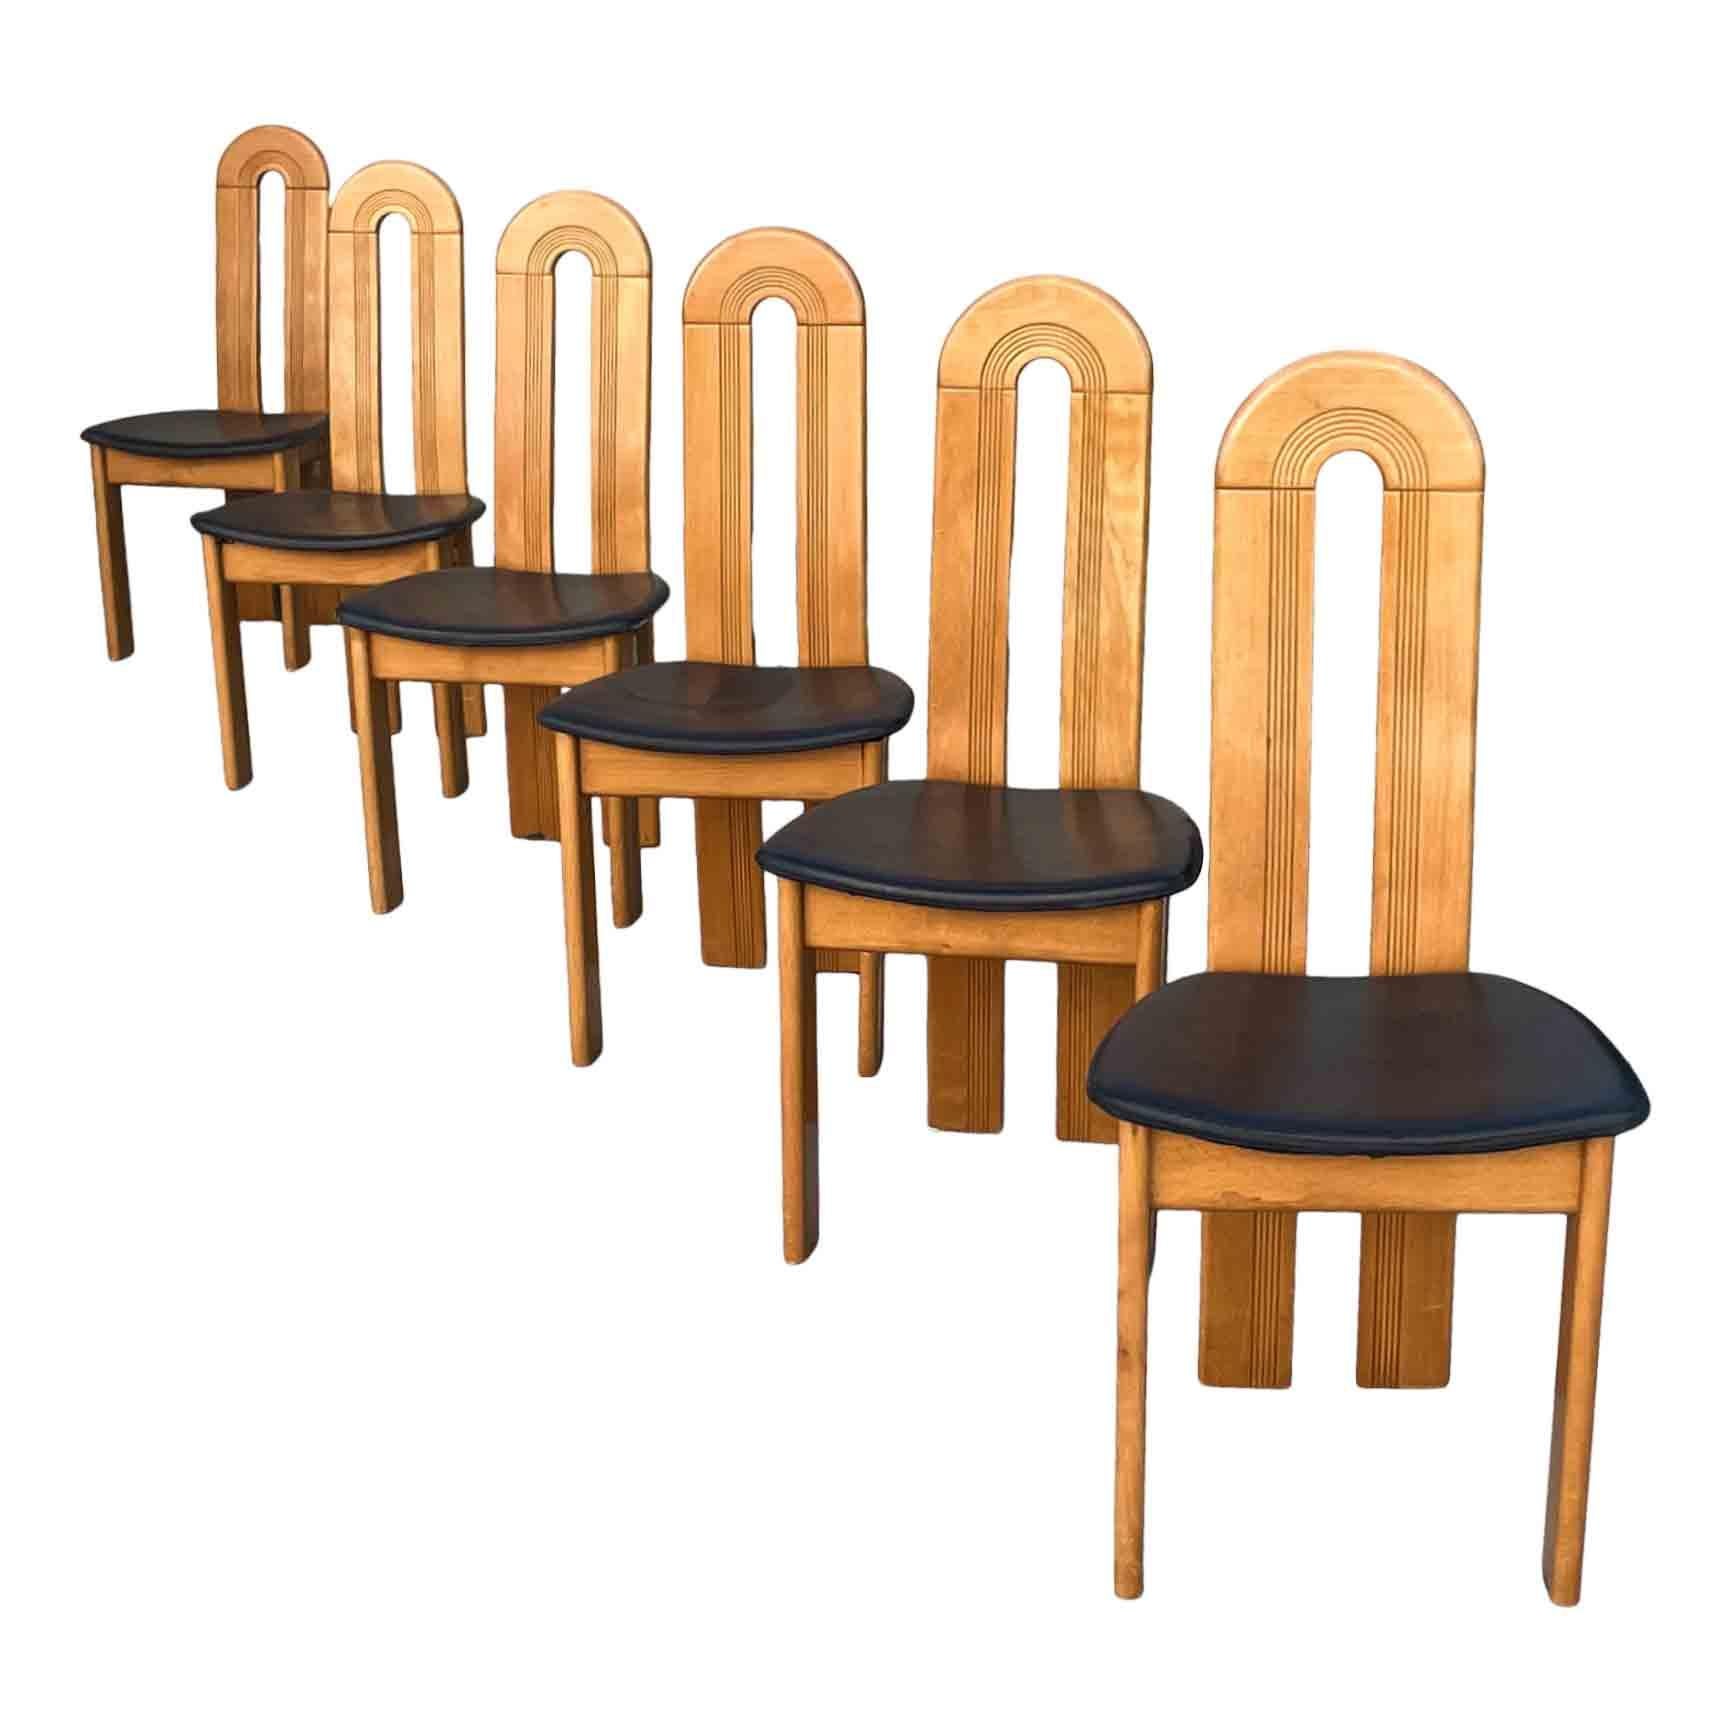 Satz von sechs italienischen Esszimmerstühlen, hergestellt in den späten 80er Jahren.

Sie haben eine Struktur aus Eschenholz und einen Sitz aus schwarzem Leder.

Sie erinnern an die Formen, die Afra und Tobia Scarpa mit 